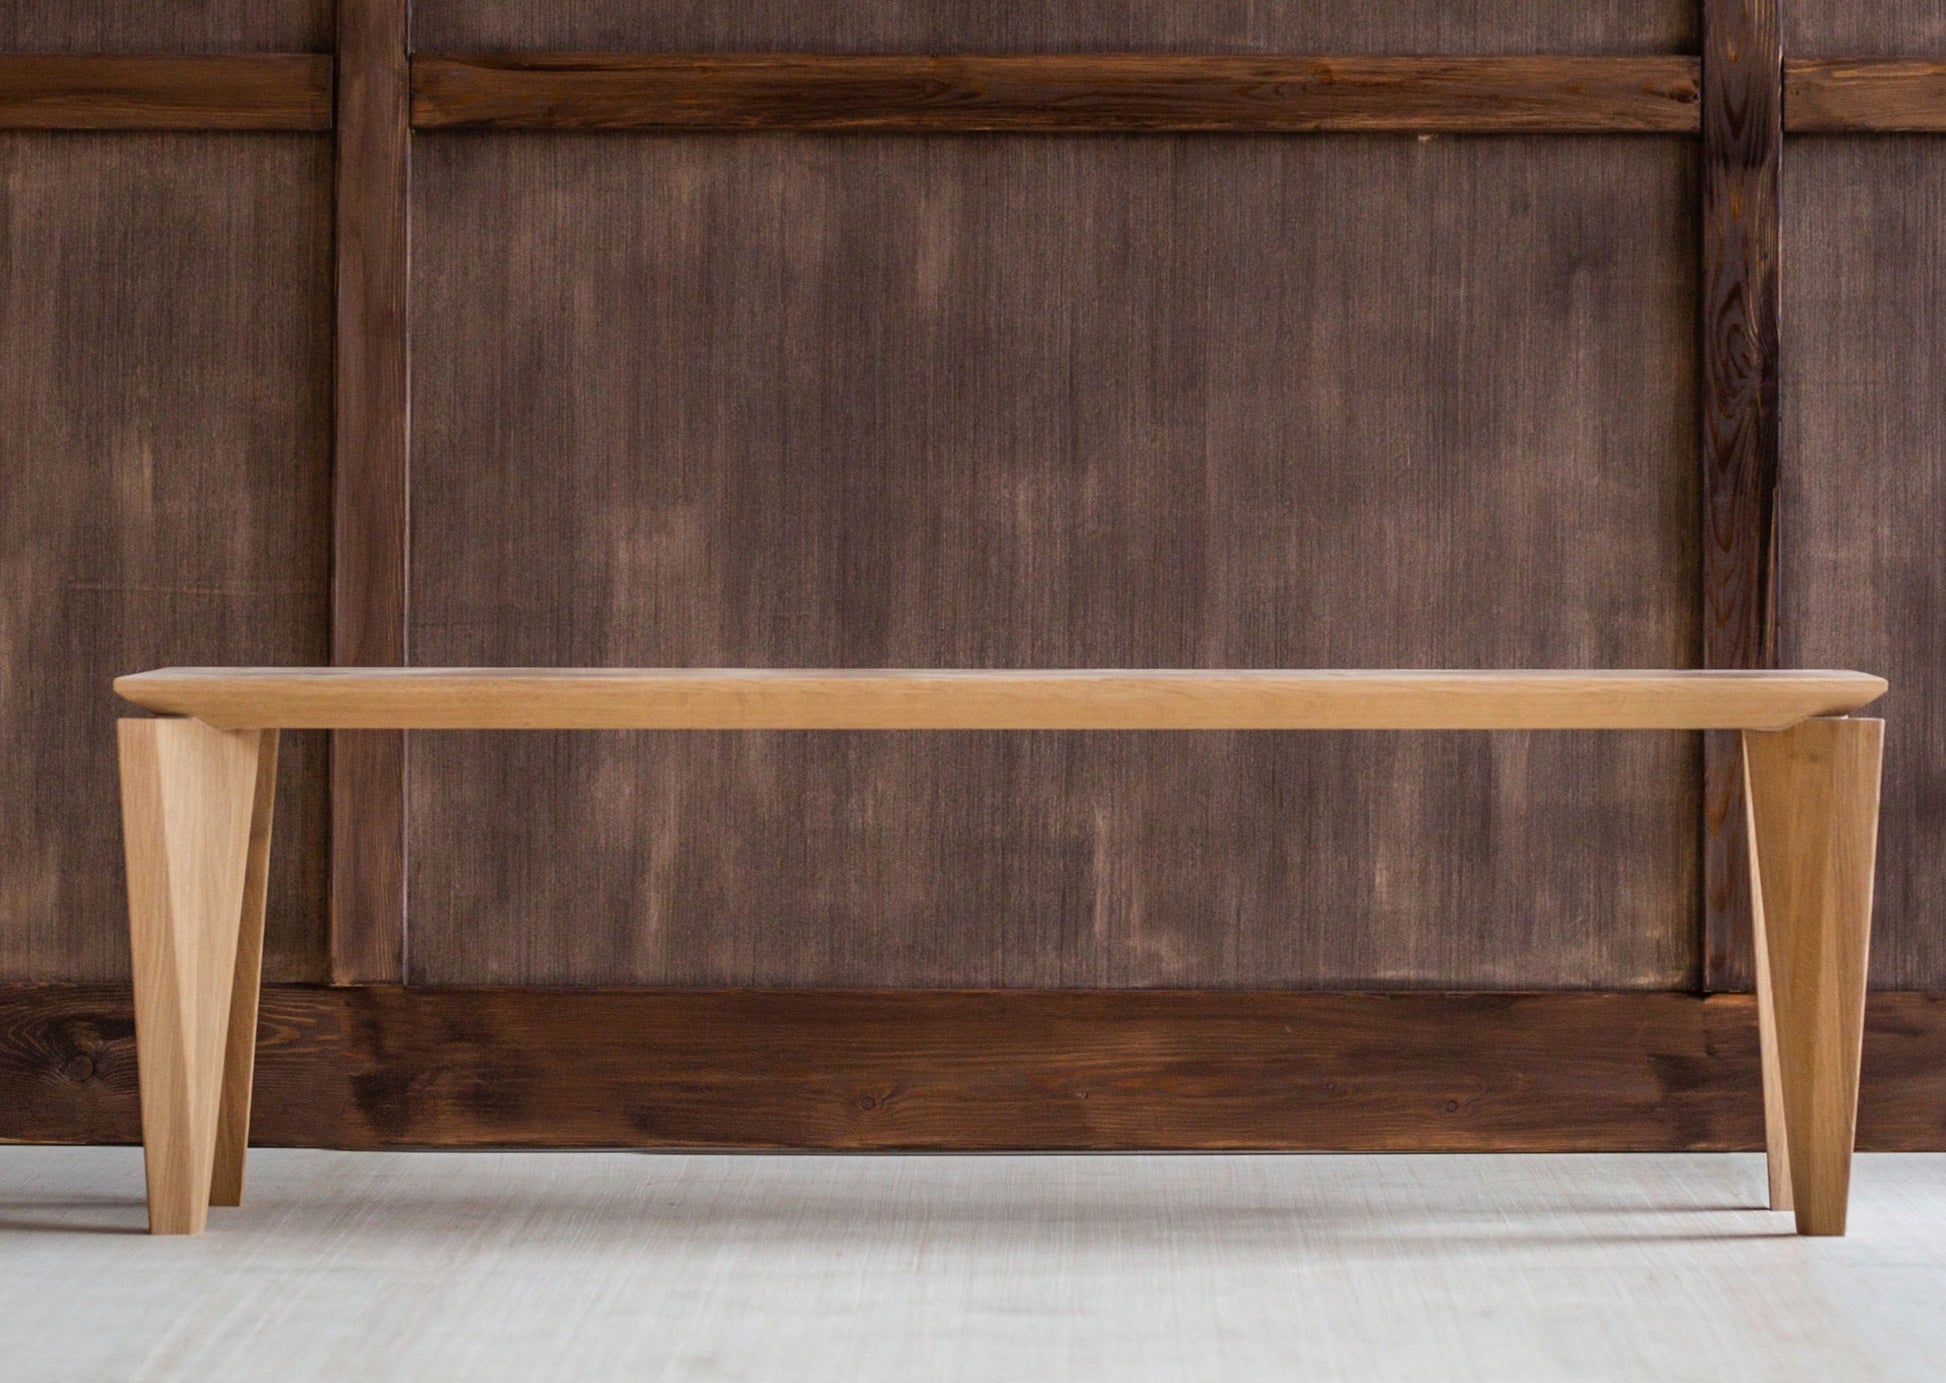 Sittebenken Kasu er laget av høyeste kvalitet lys eik. Denne sittebenken har elegante og moderne former, med unike bein.